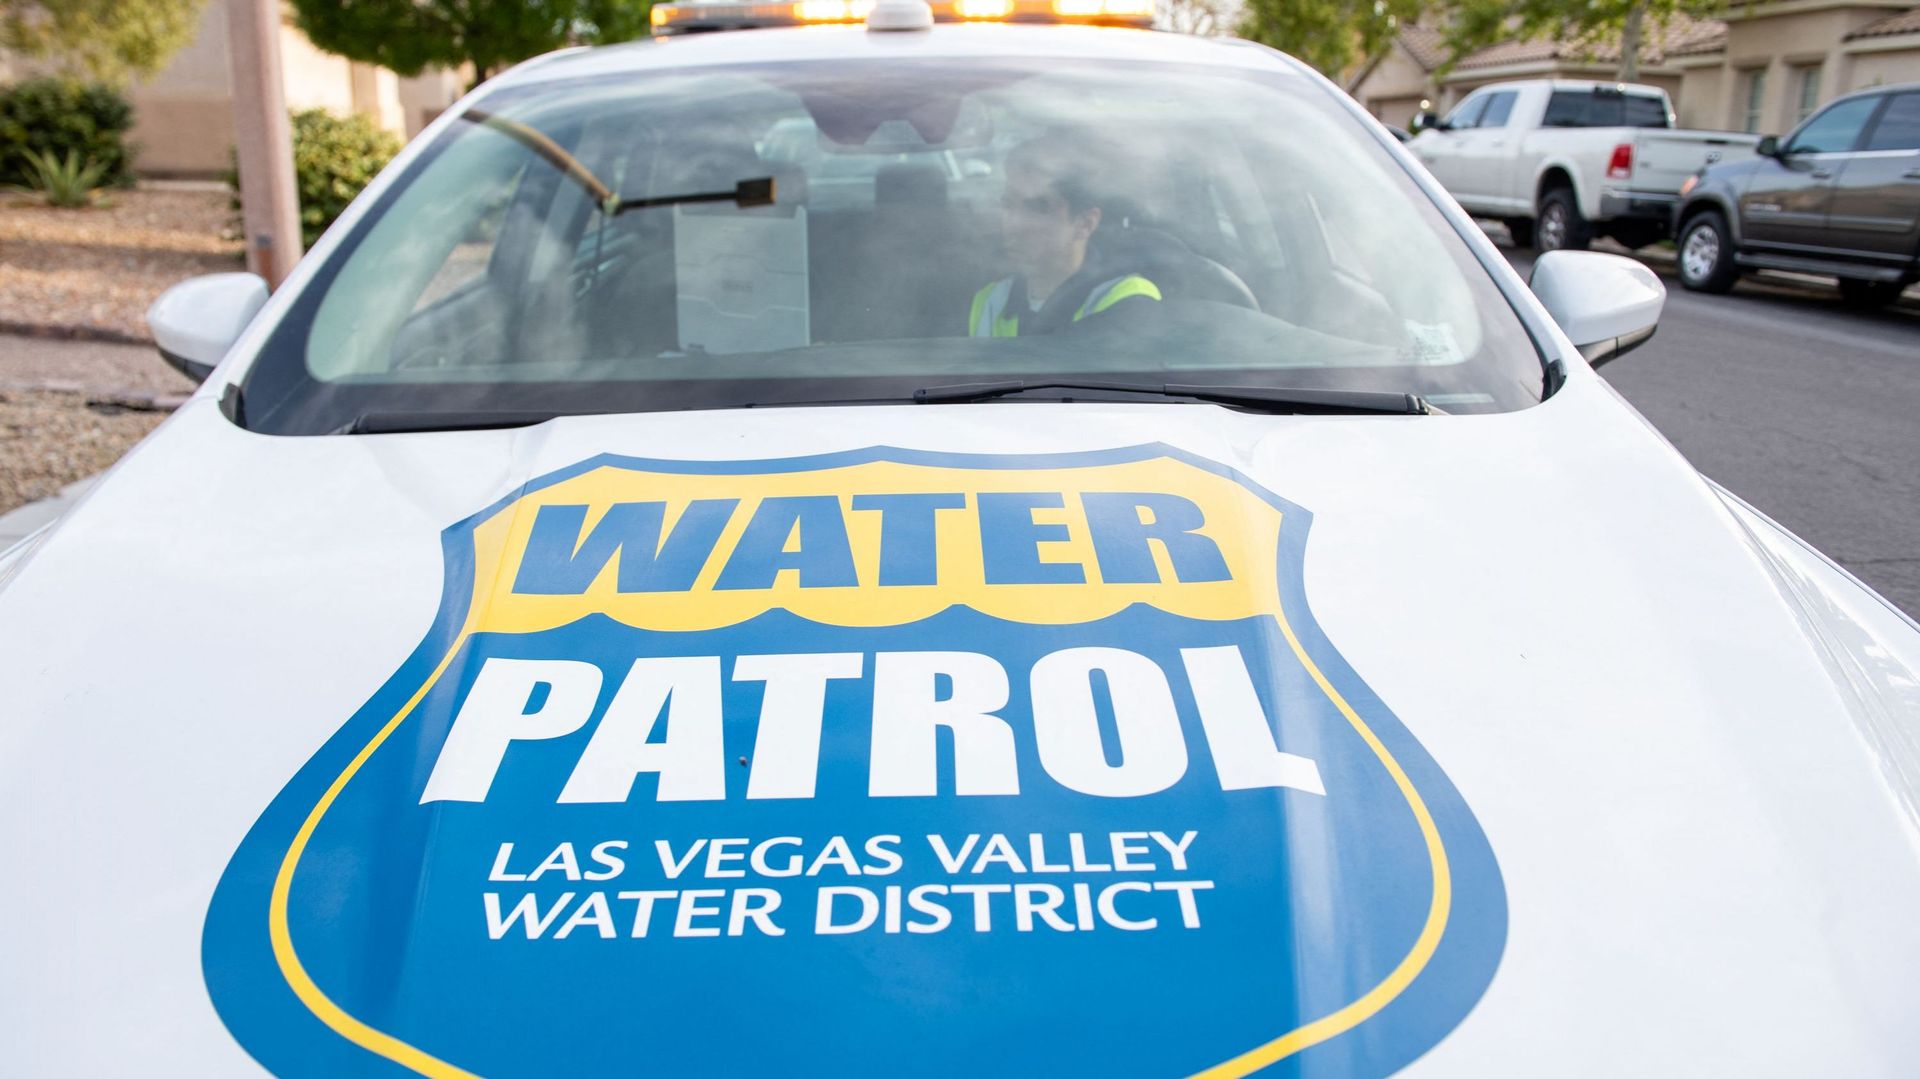 Las Vegas water patrol